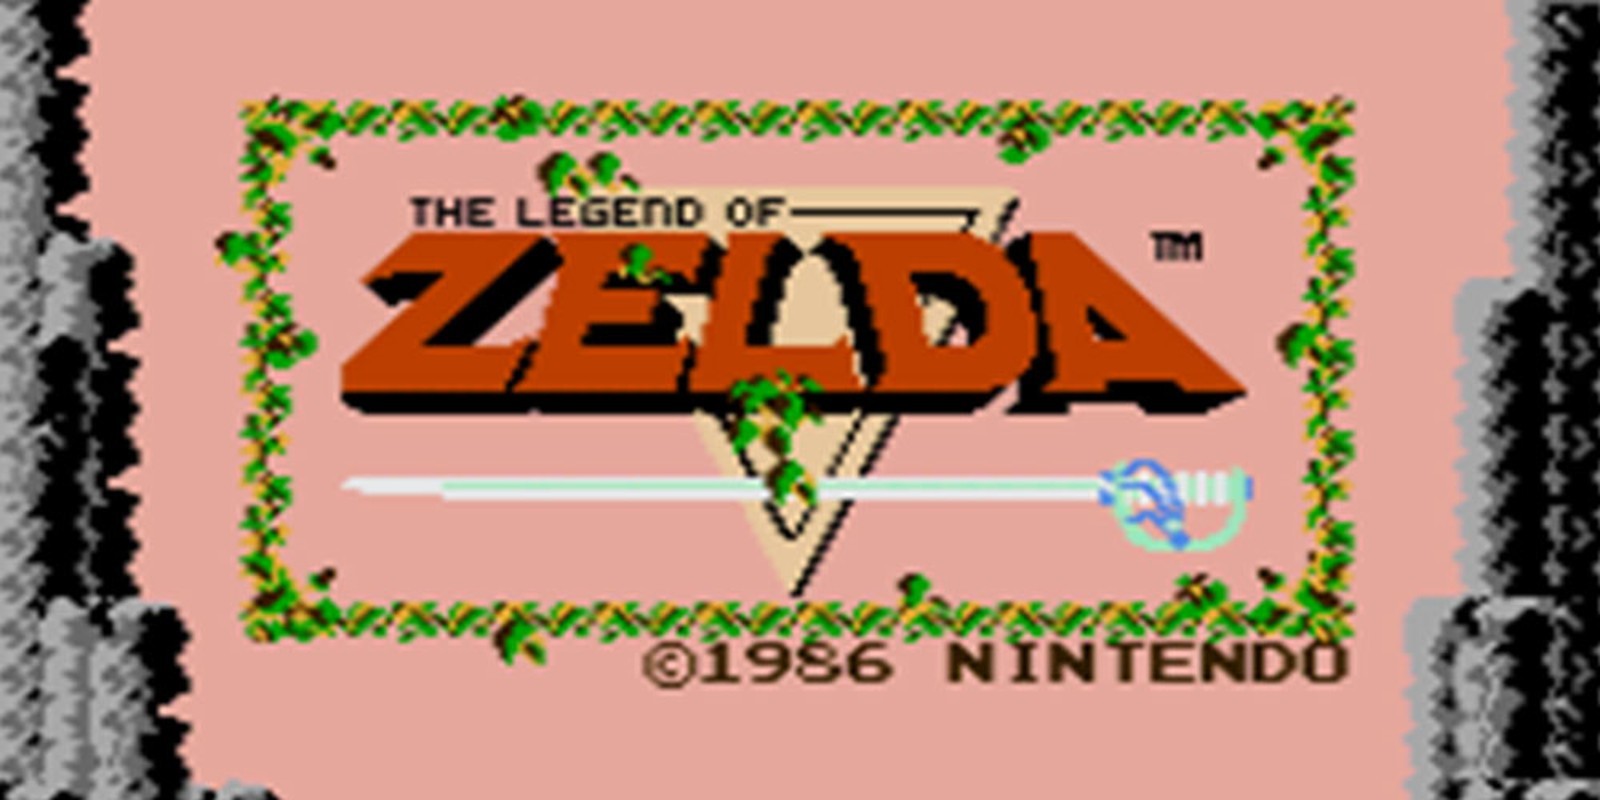 The Legend of Zelda. Nintendo